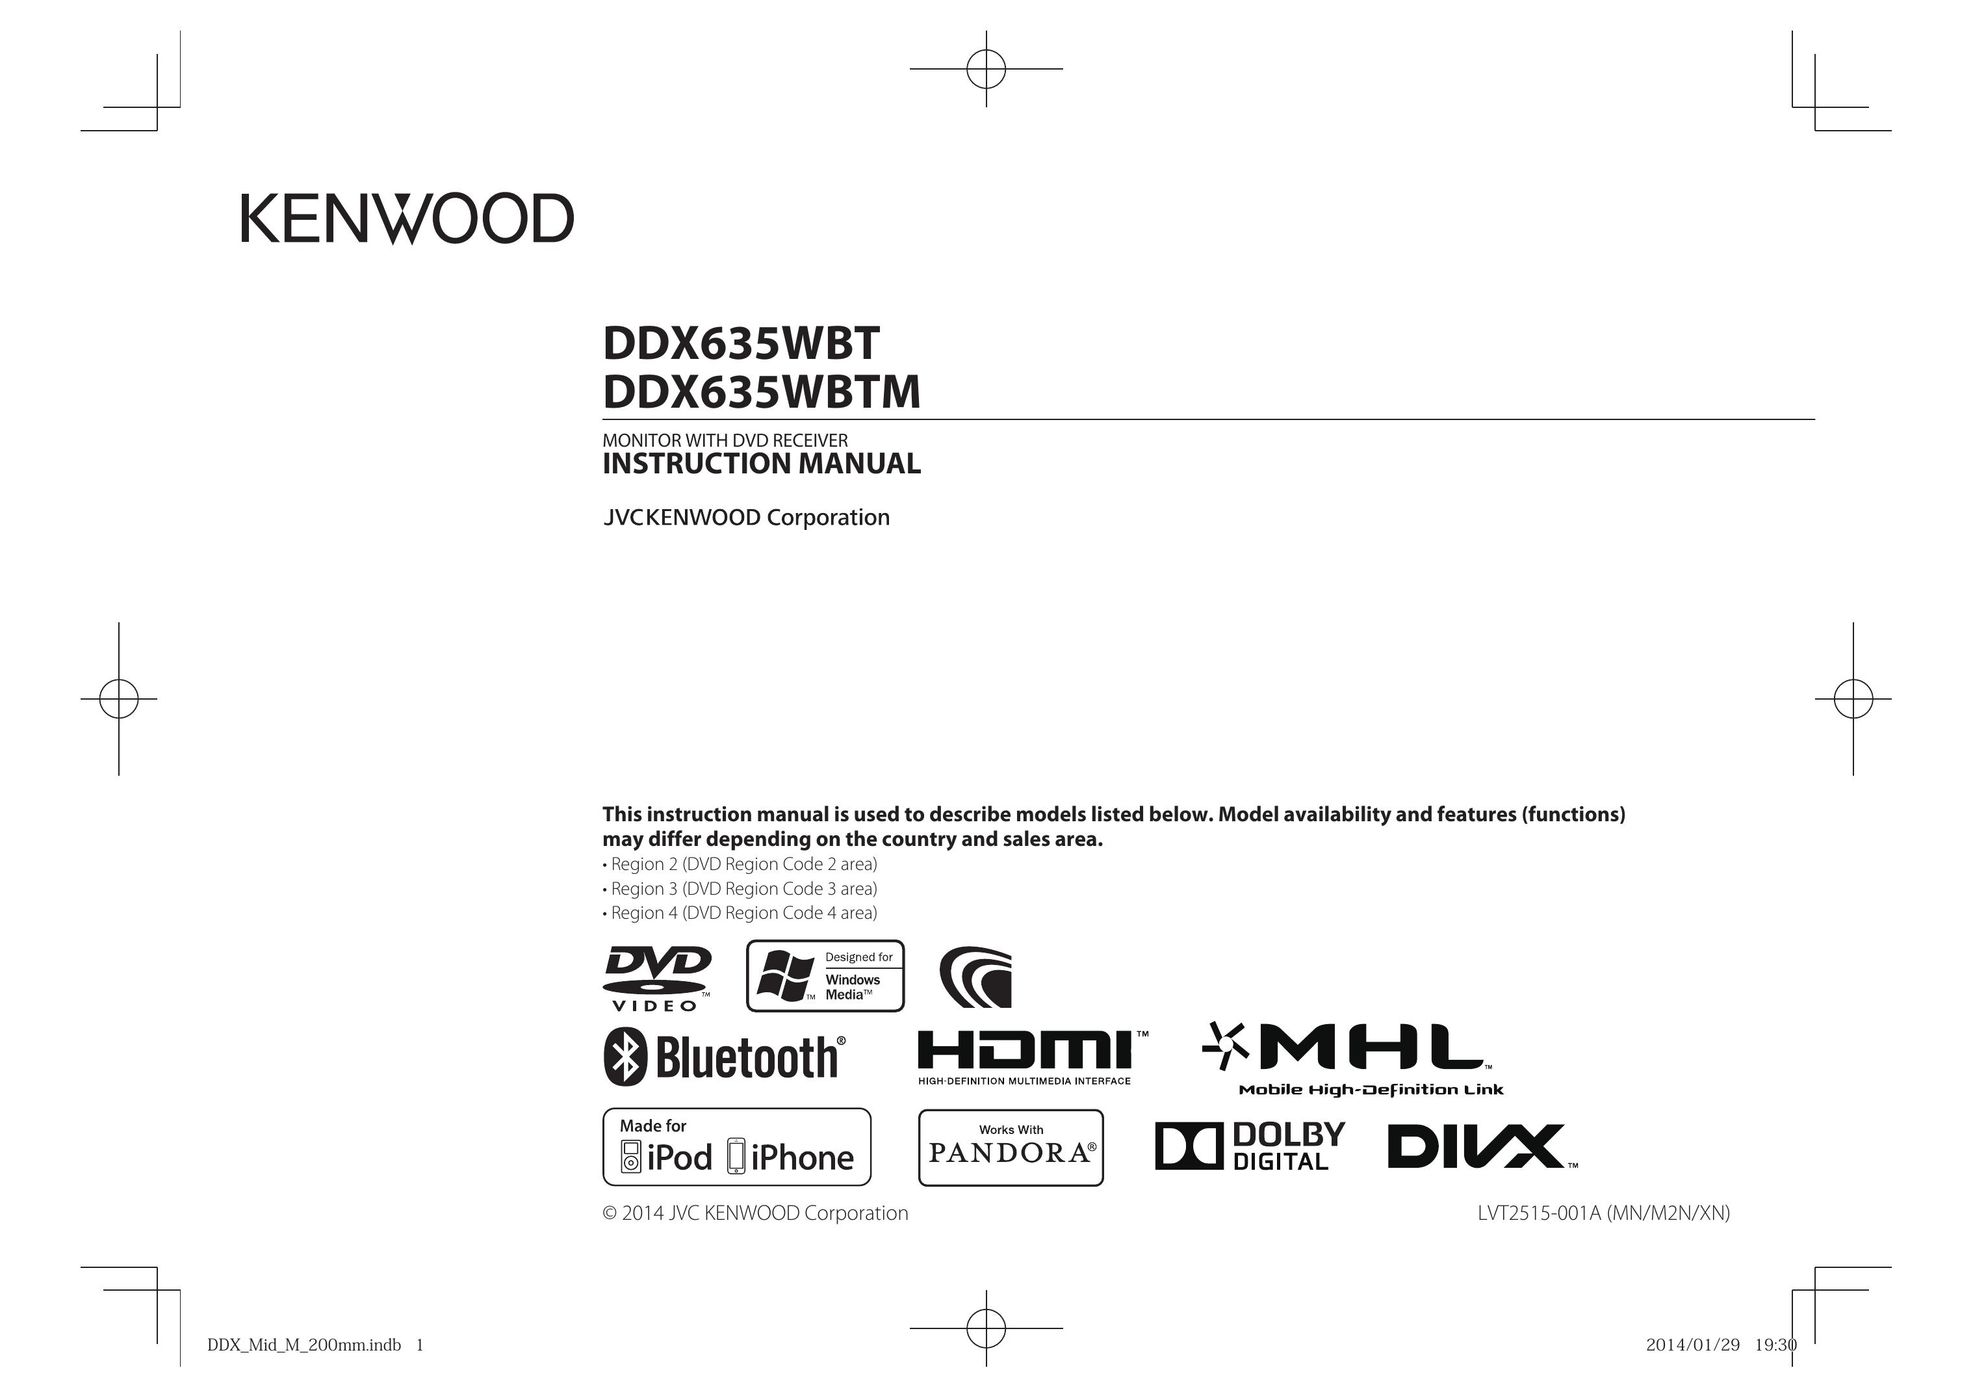 Kenwood DDX635WBT Car Video System User Manual